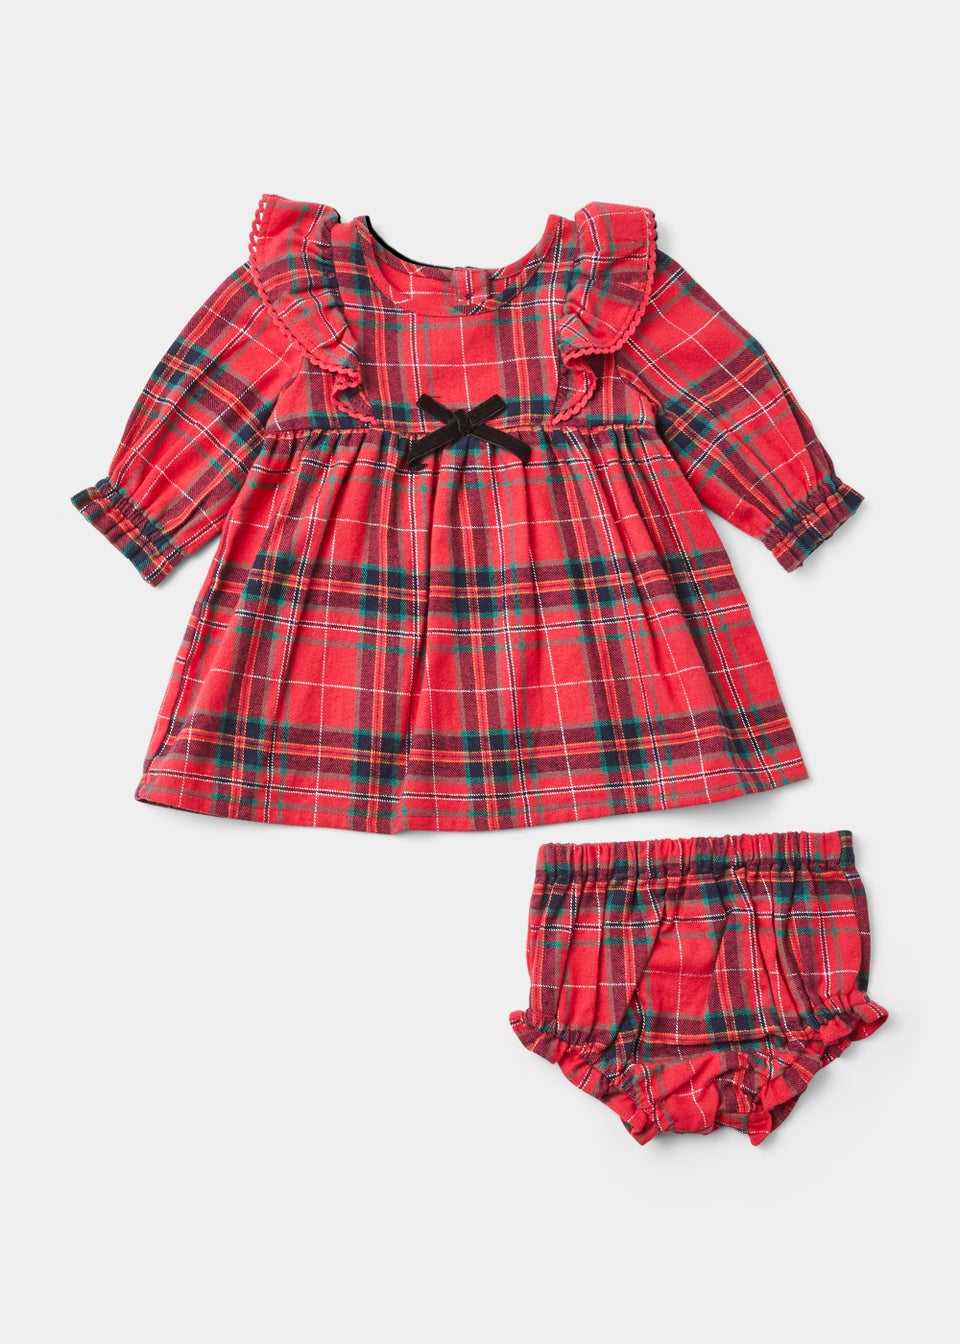 Baby Mini Me Red Tartan Check Dress & Knickers Set (Newborn-18mths)